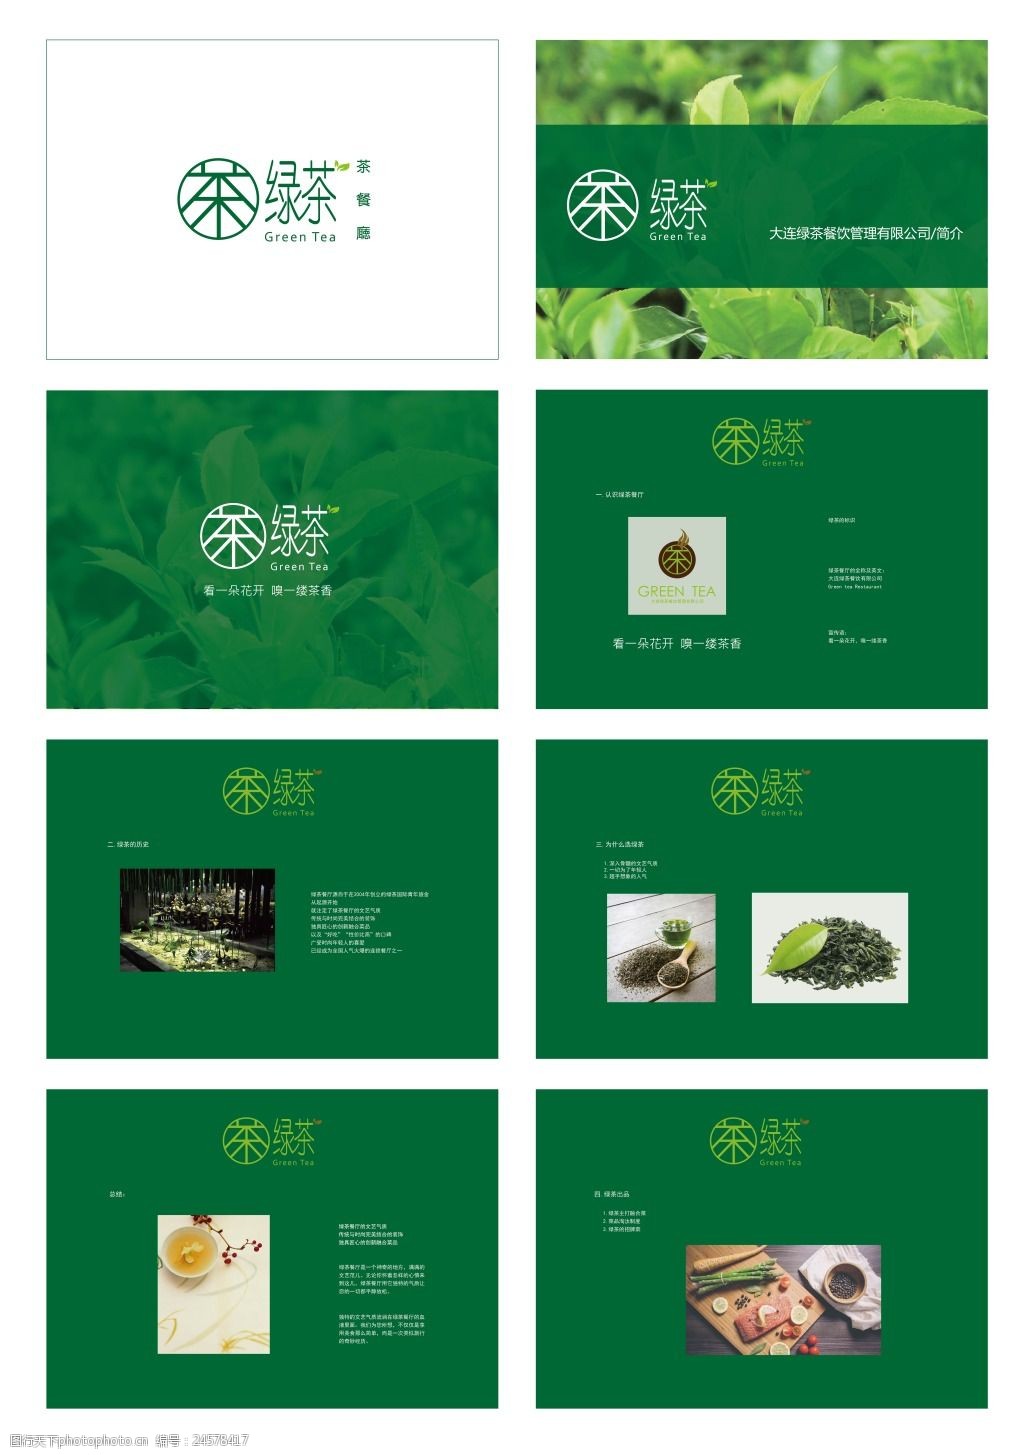 关键词:绿茶餐厅vi基础部分餐厅简介18 cis 餐厅vi设计 绿茶logo 画册